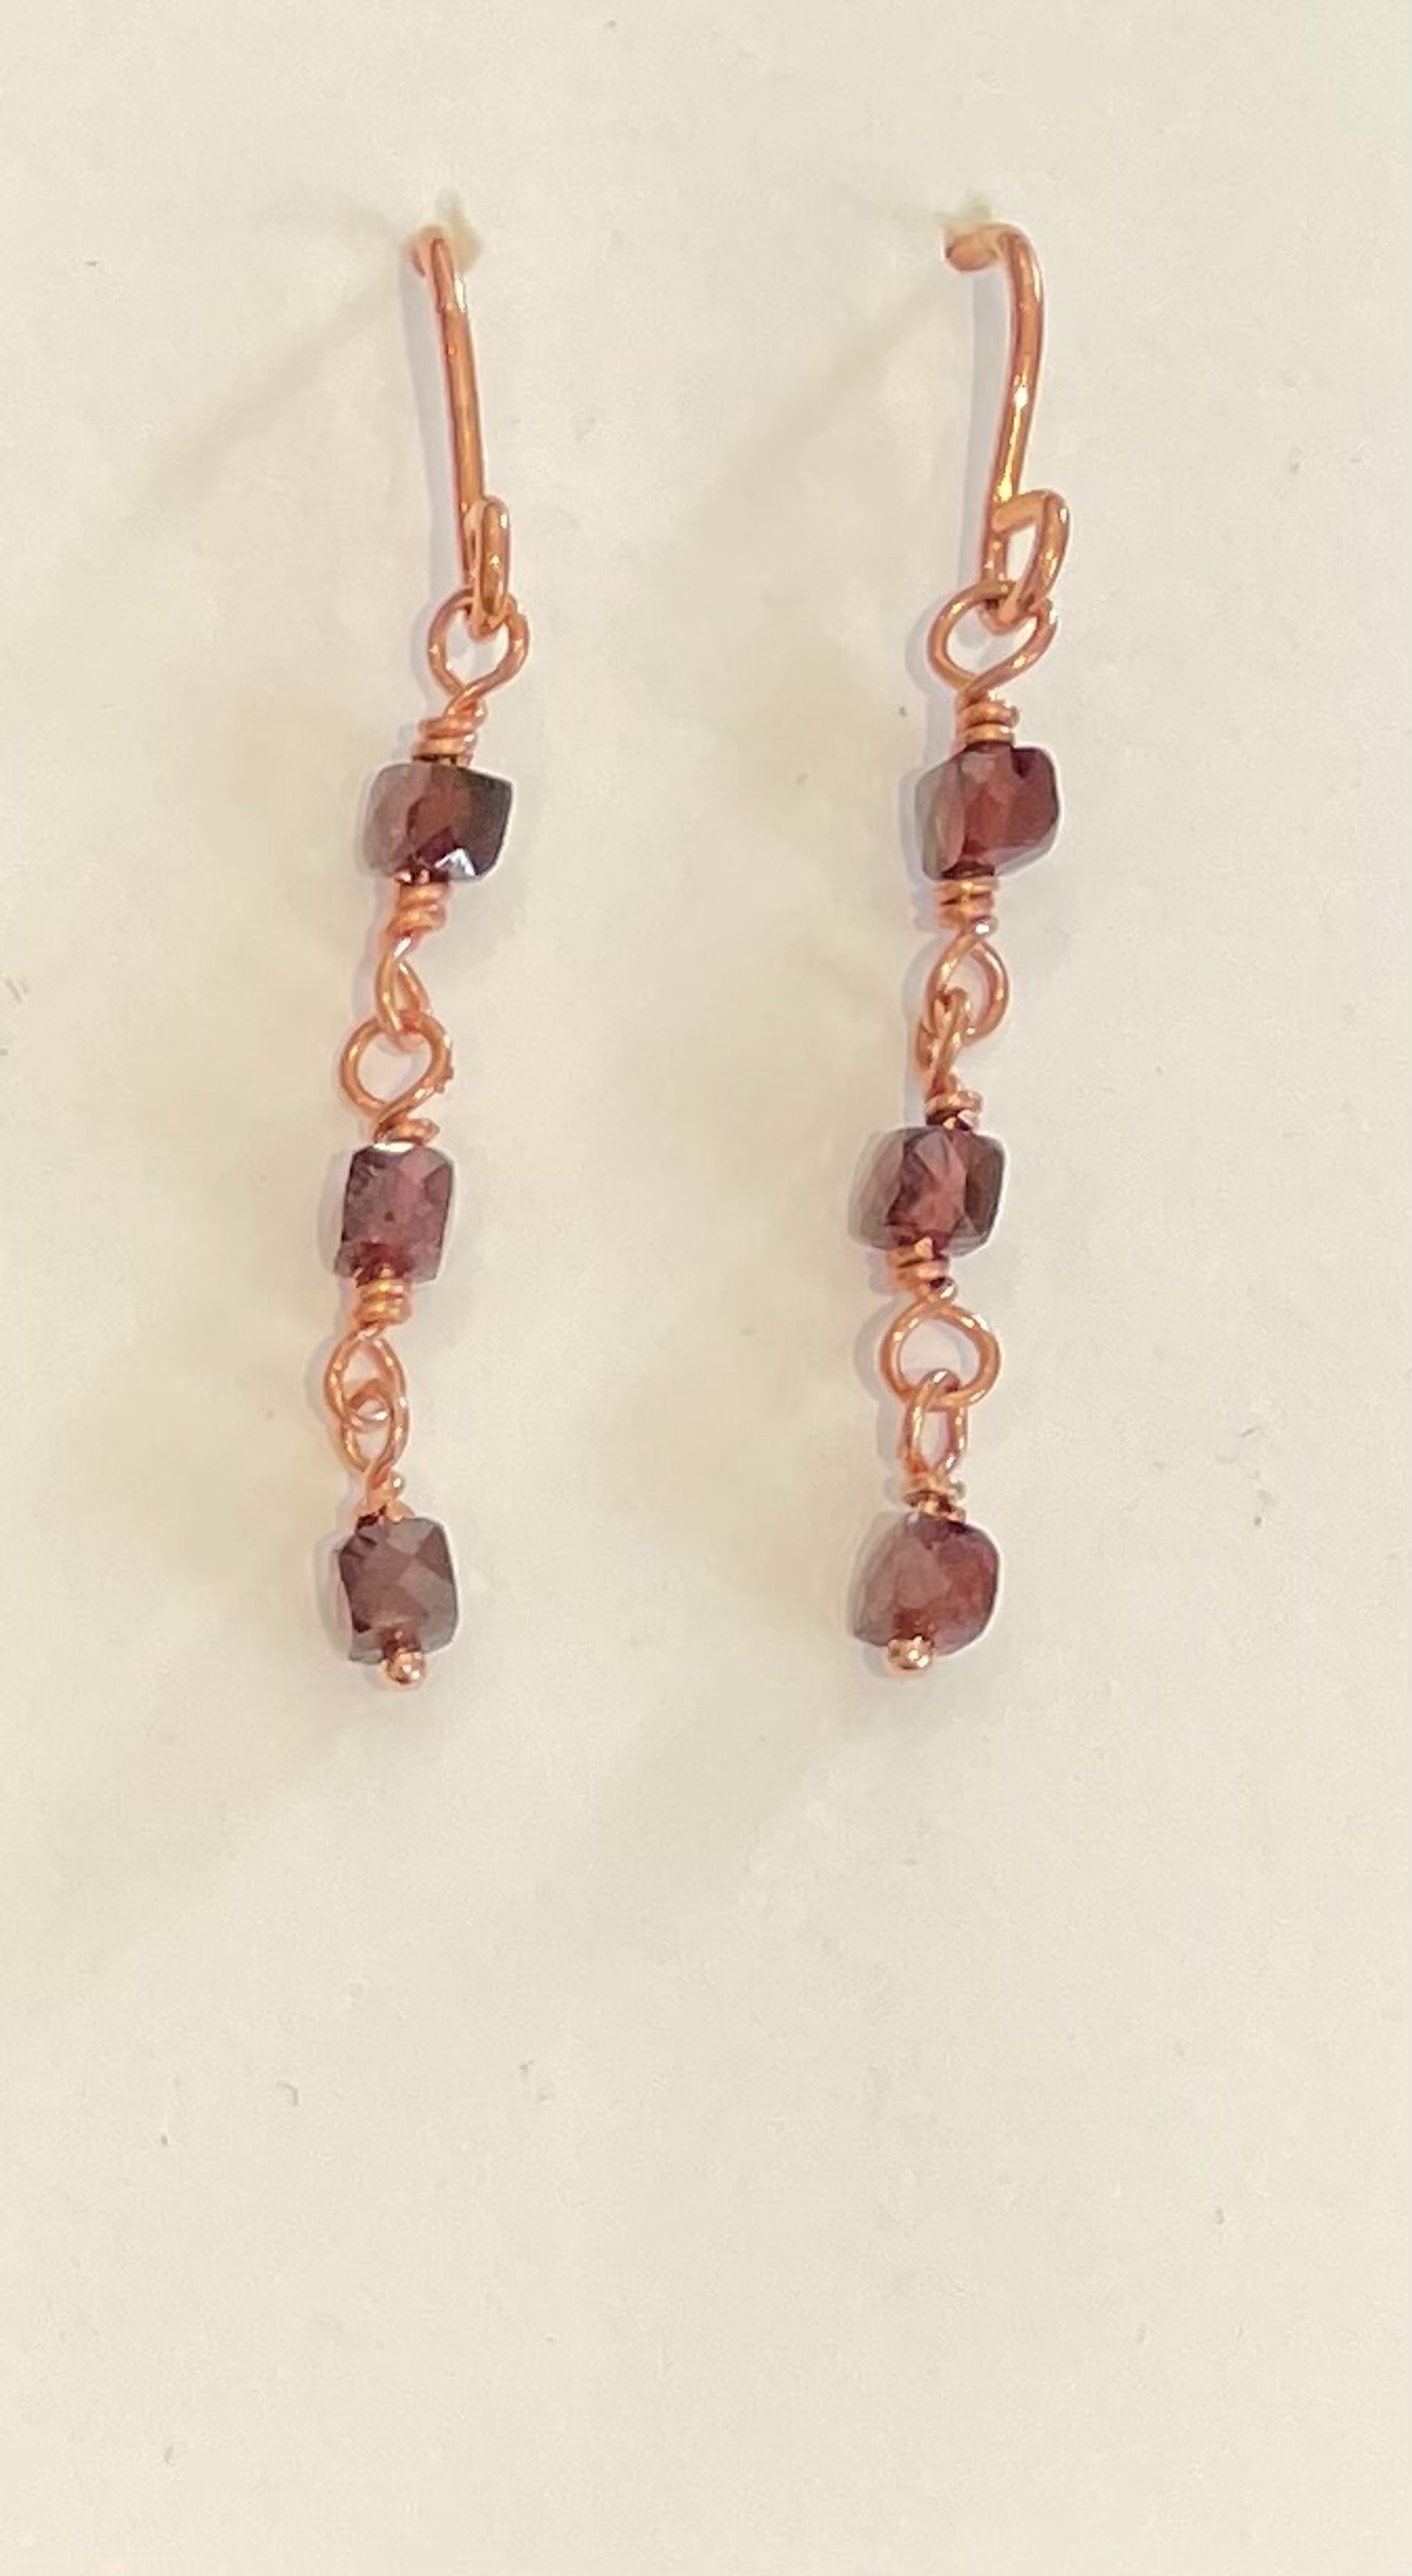 Garnet Links Copper Earrings by Emelie Hebert